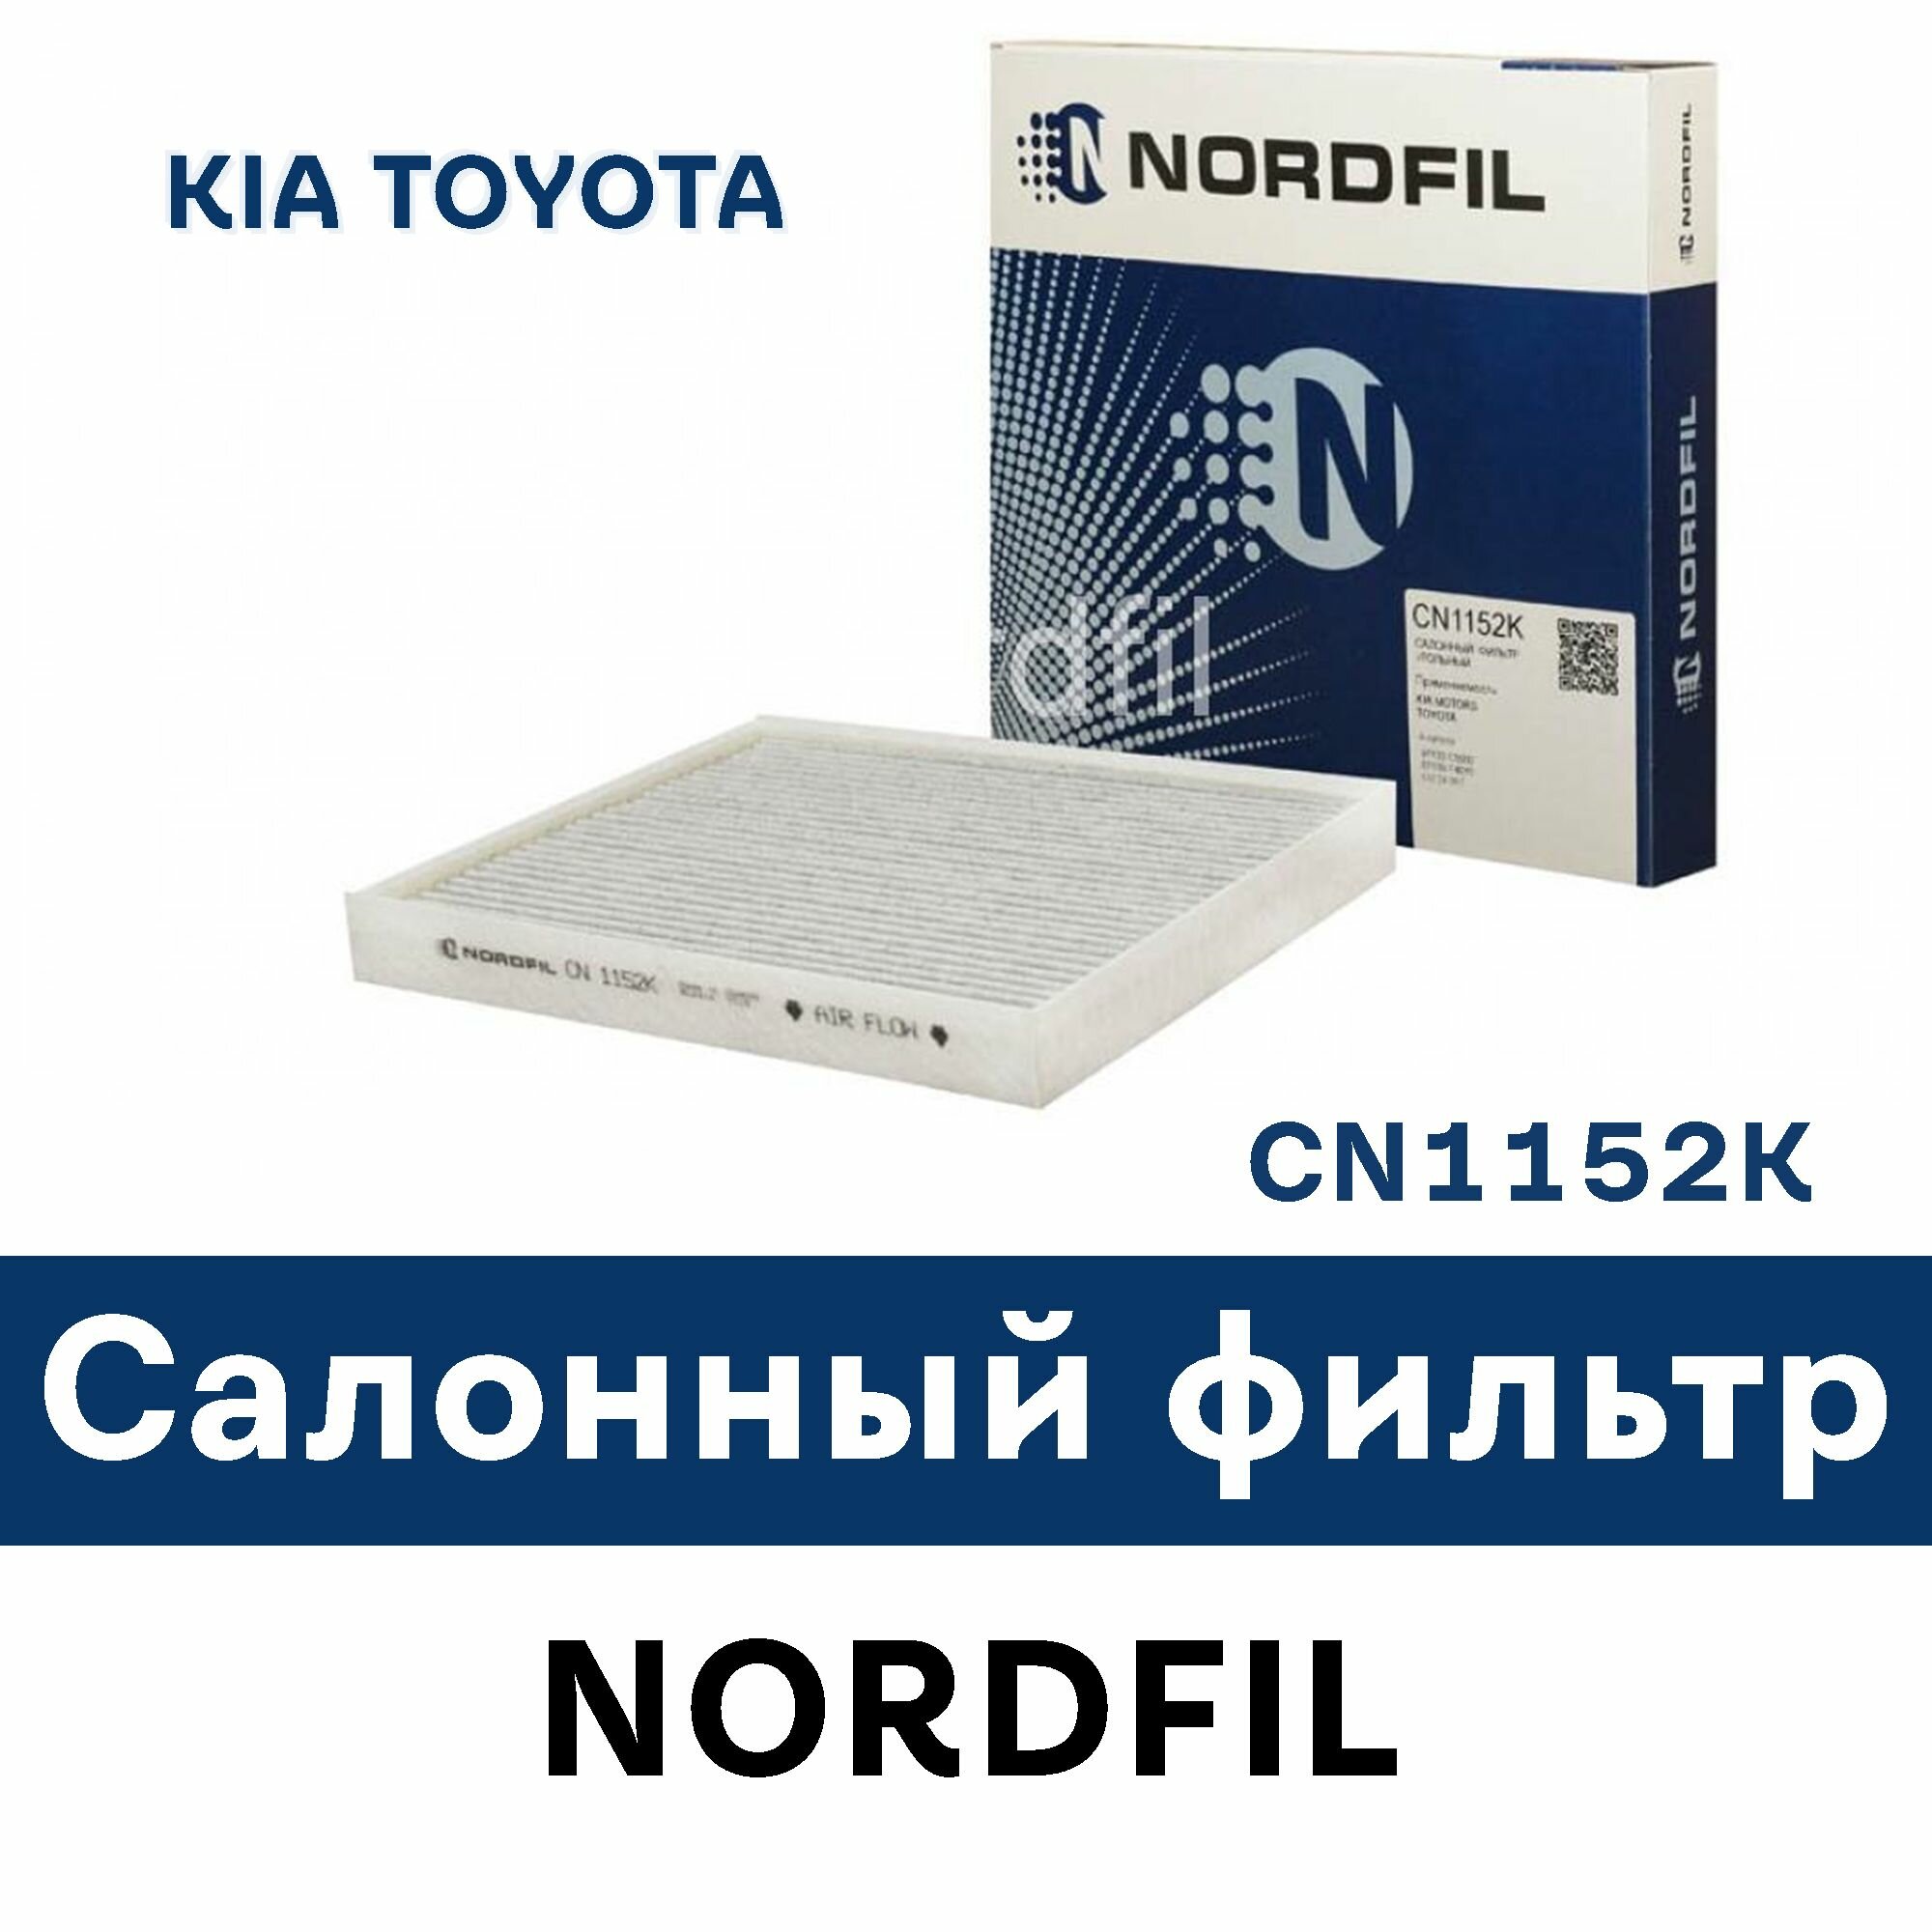 Салонный фильтр для KIA Sorento III (UM) / Sorento Prime (UM) TOYOTA C-HR CN1152K NORDFIL